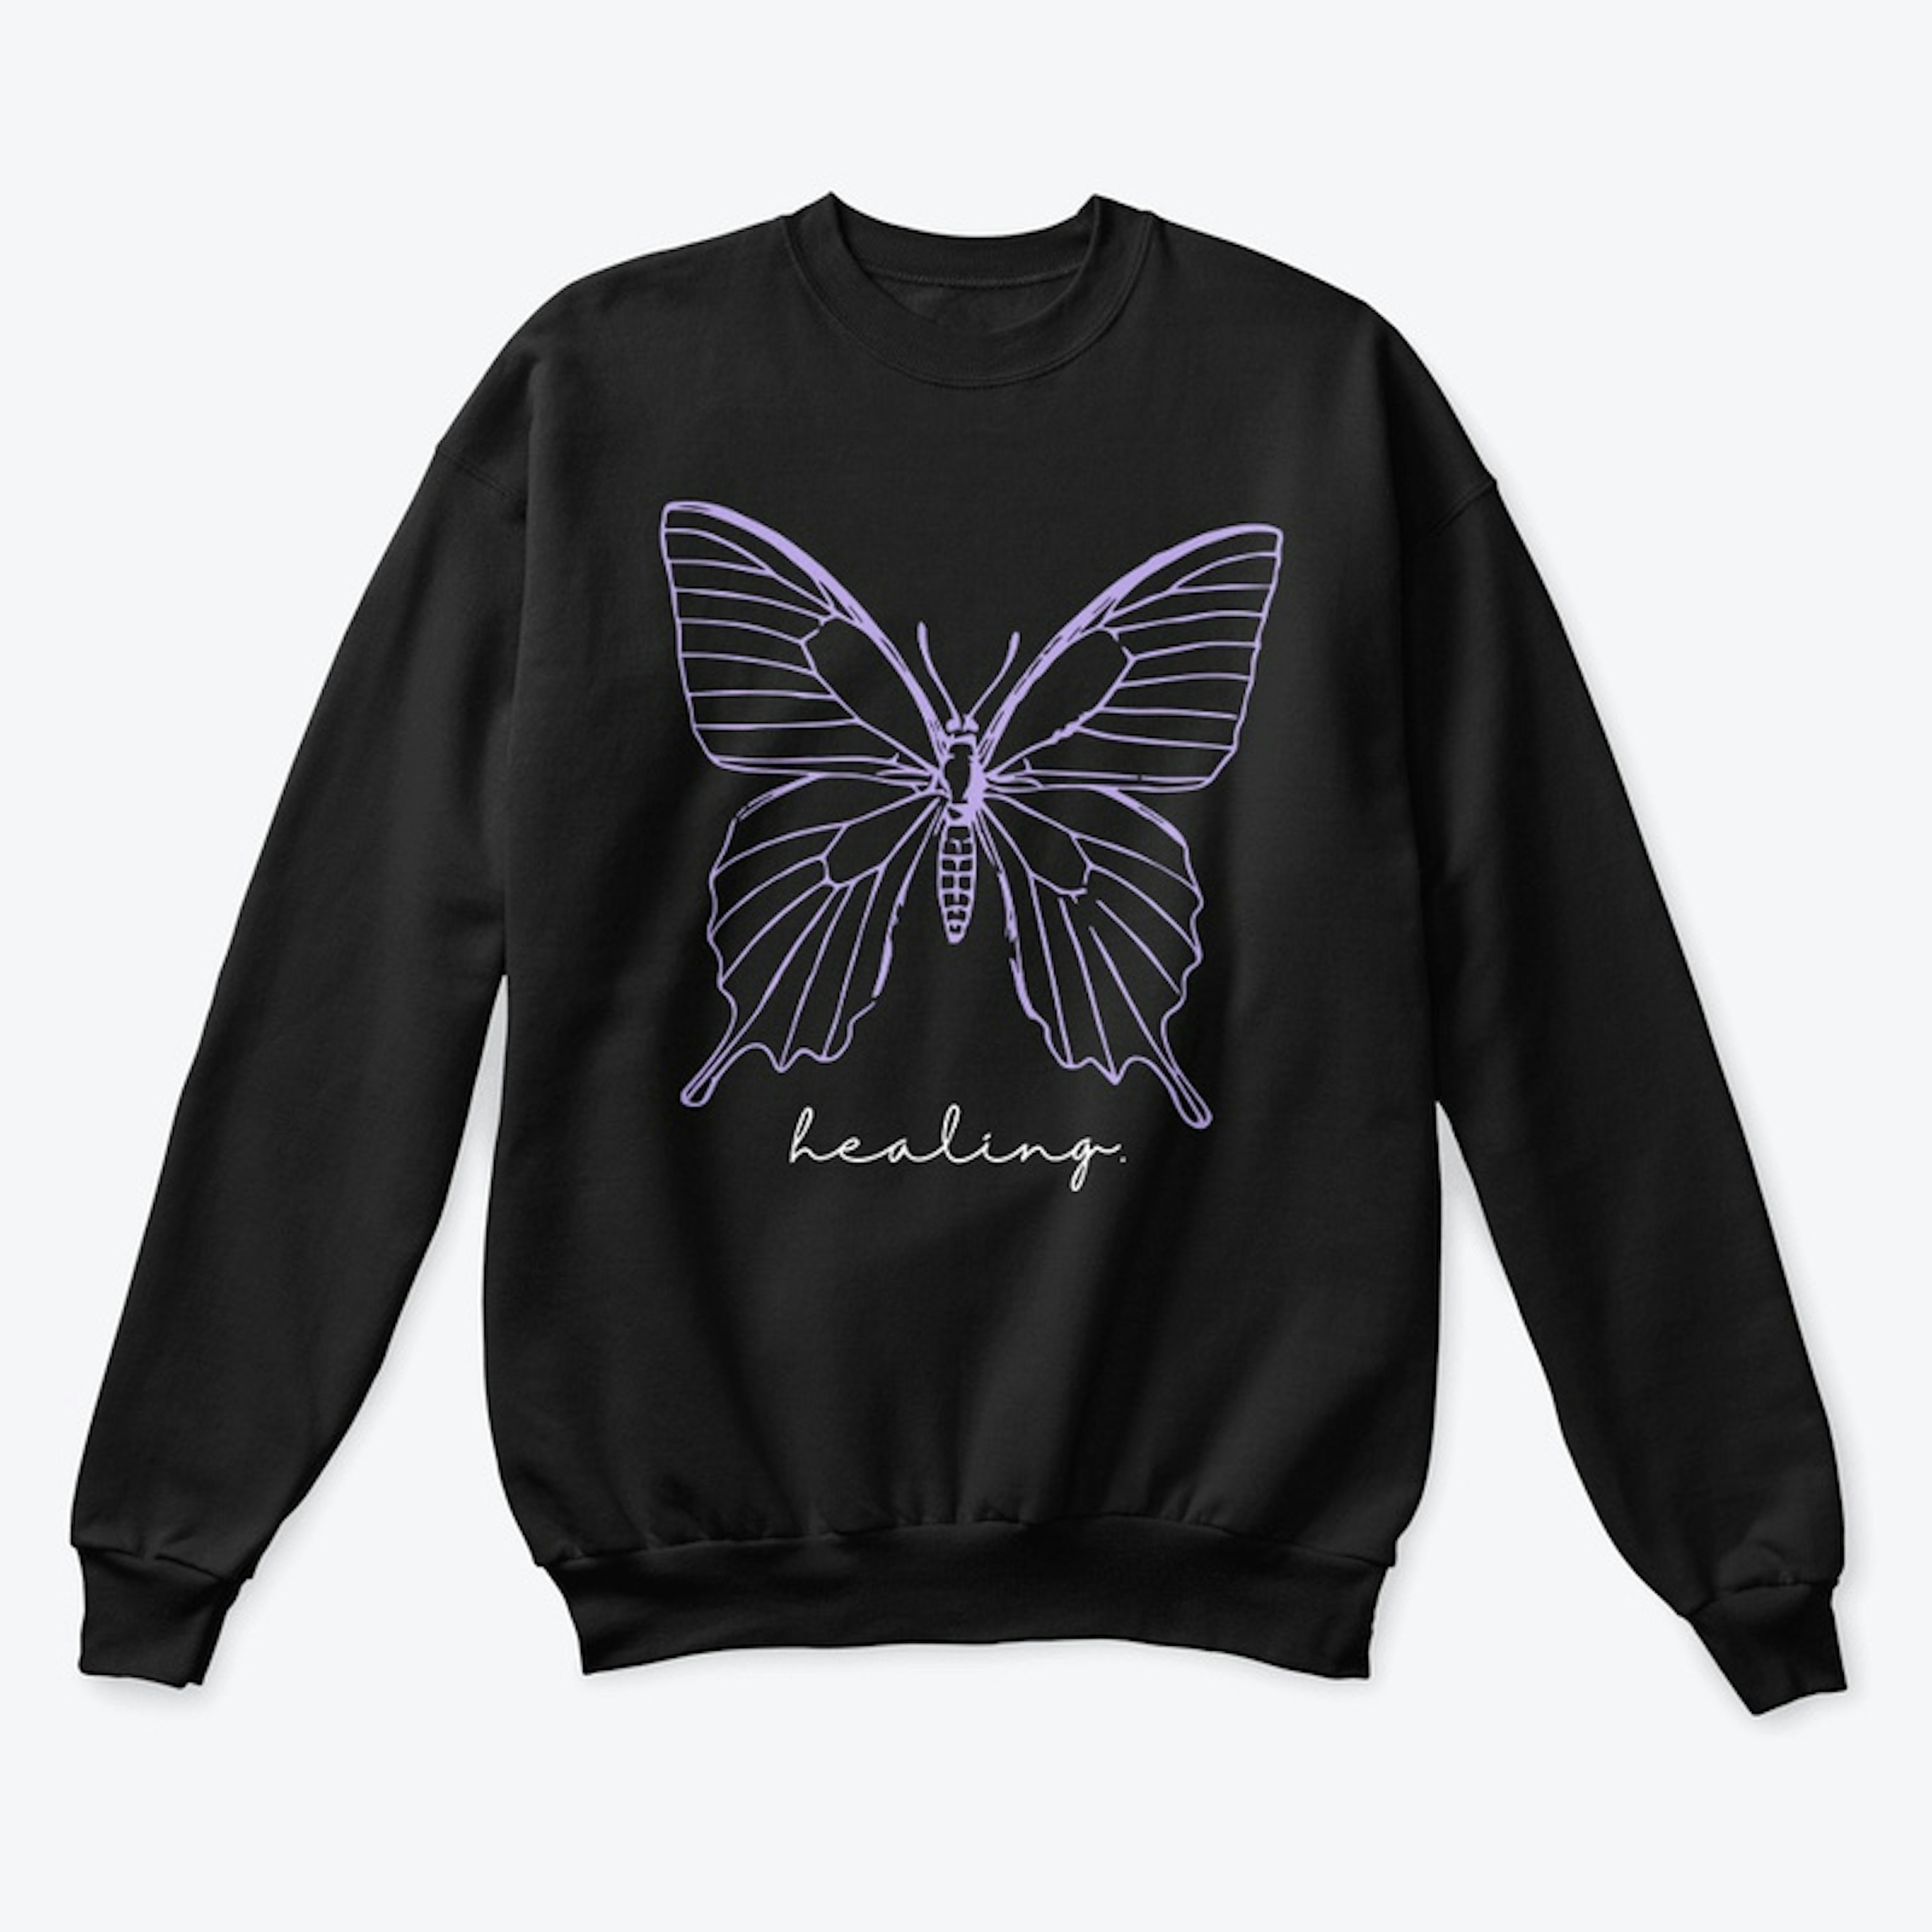 Healing Butterfly